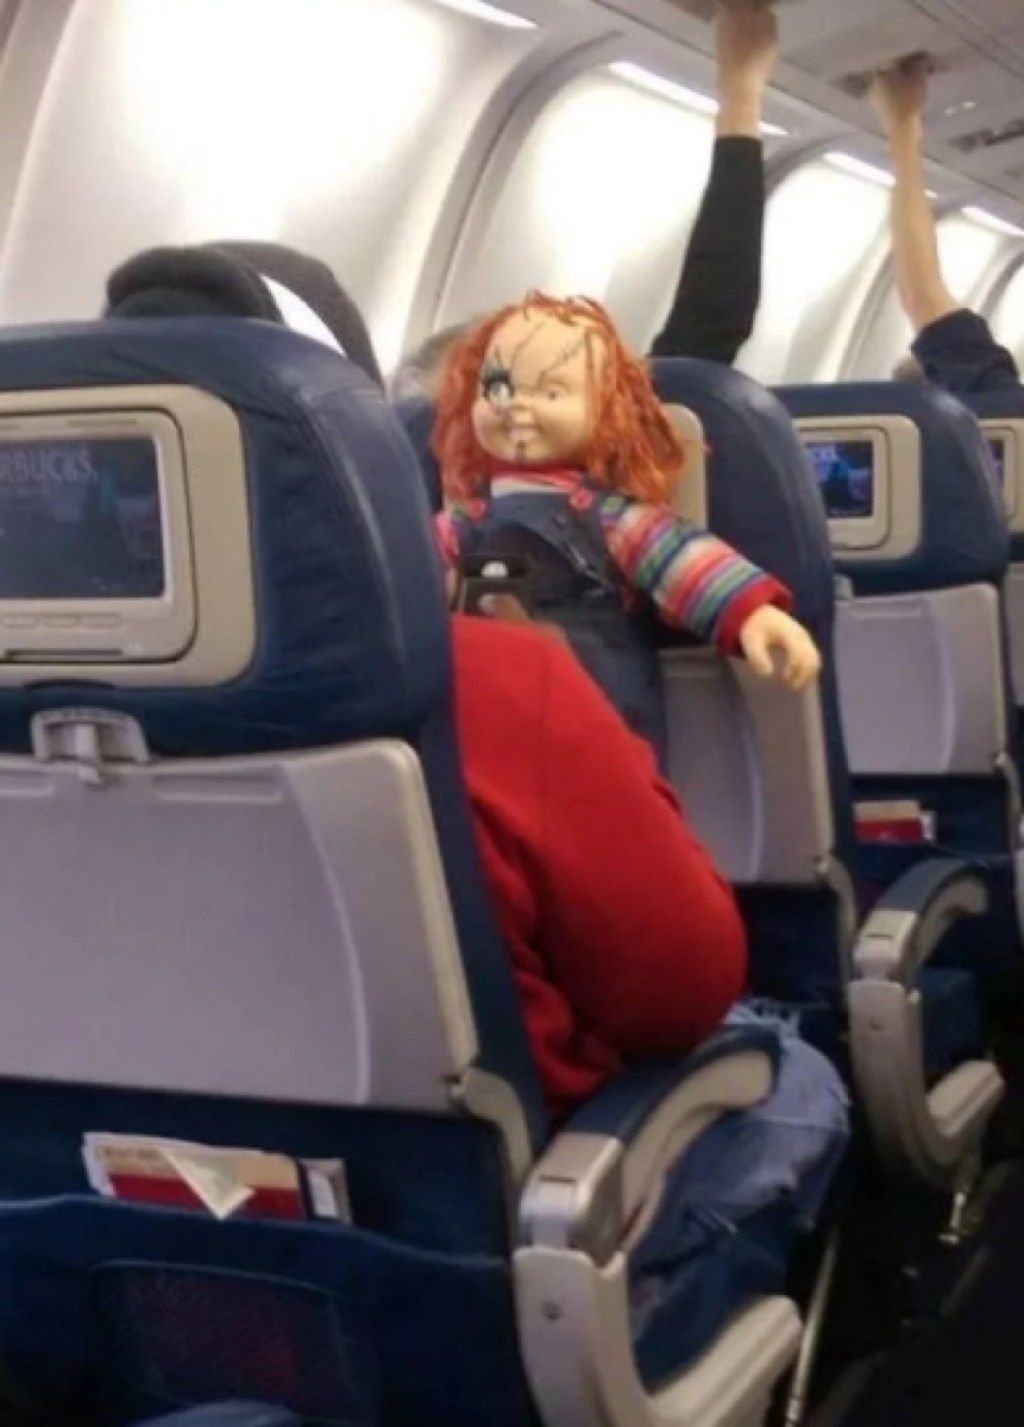 pasažier s fotkami strašidelných bábik strašných cestujúcich v lietadle